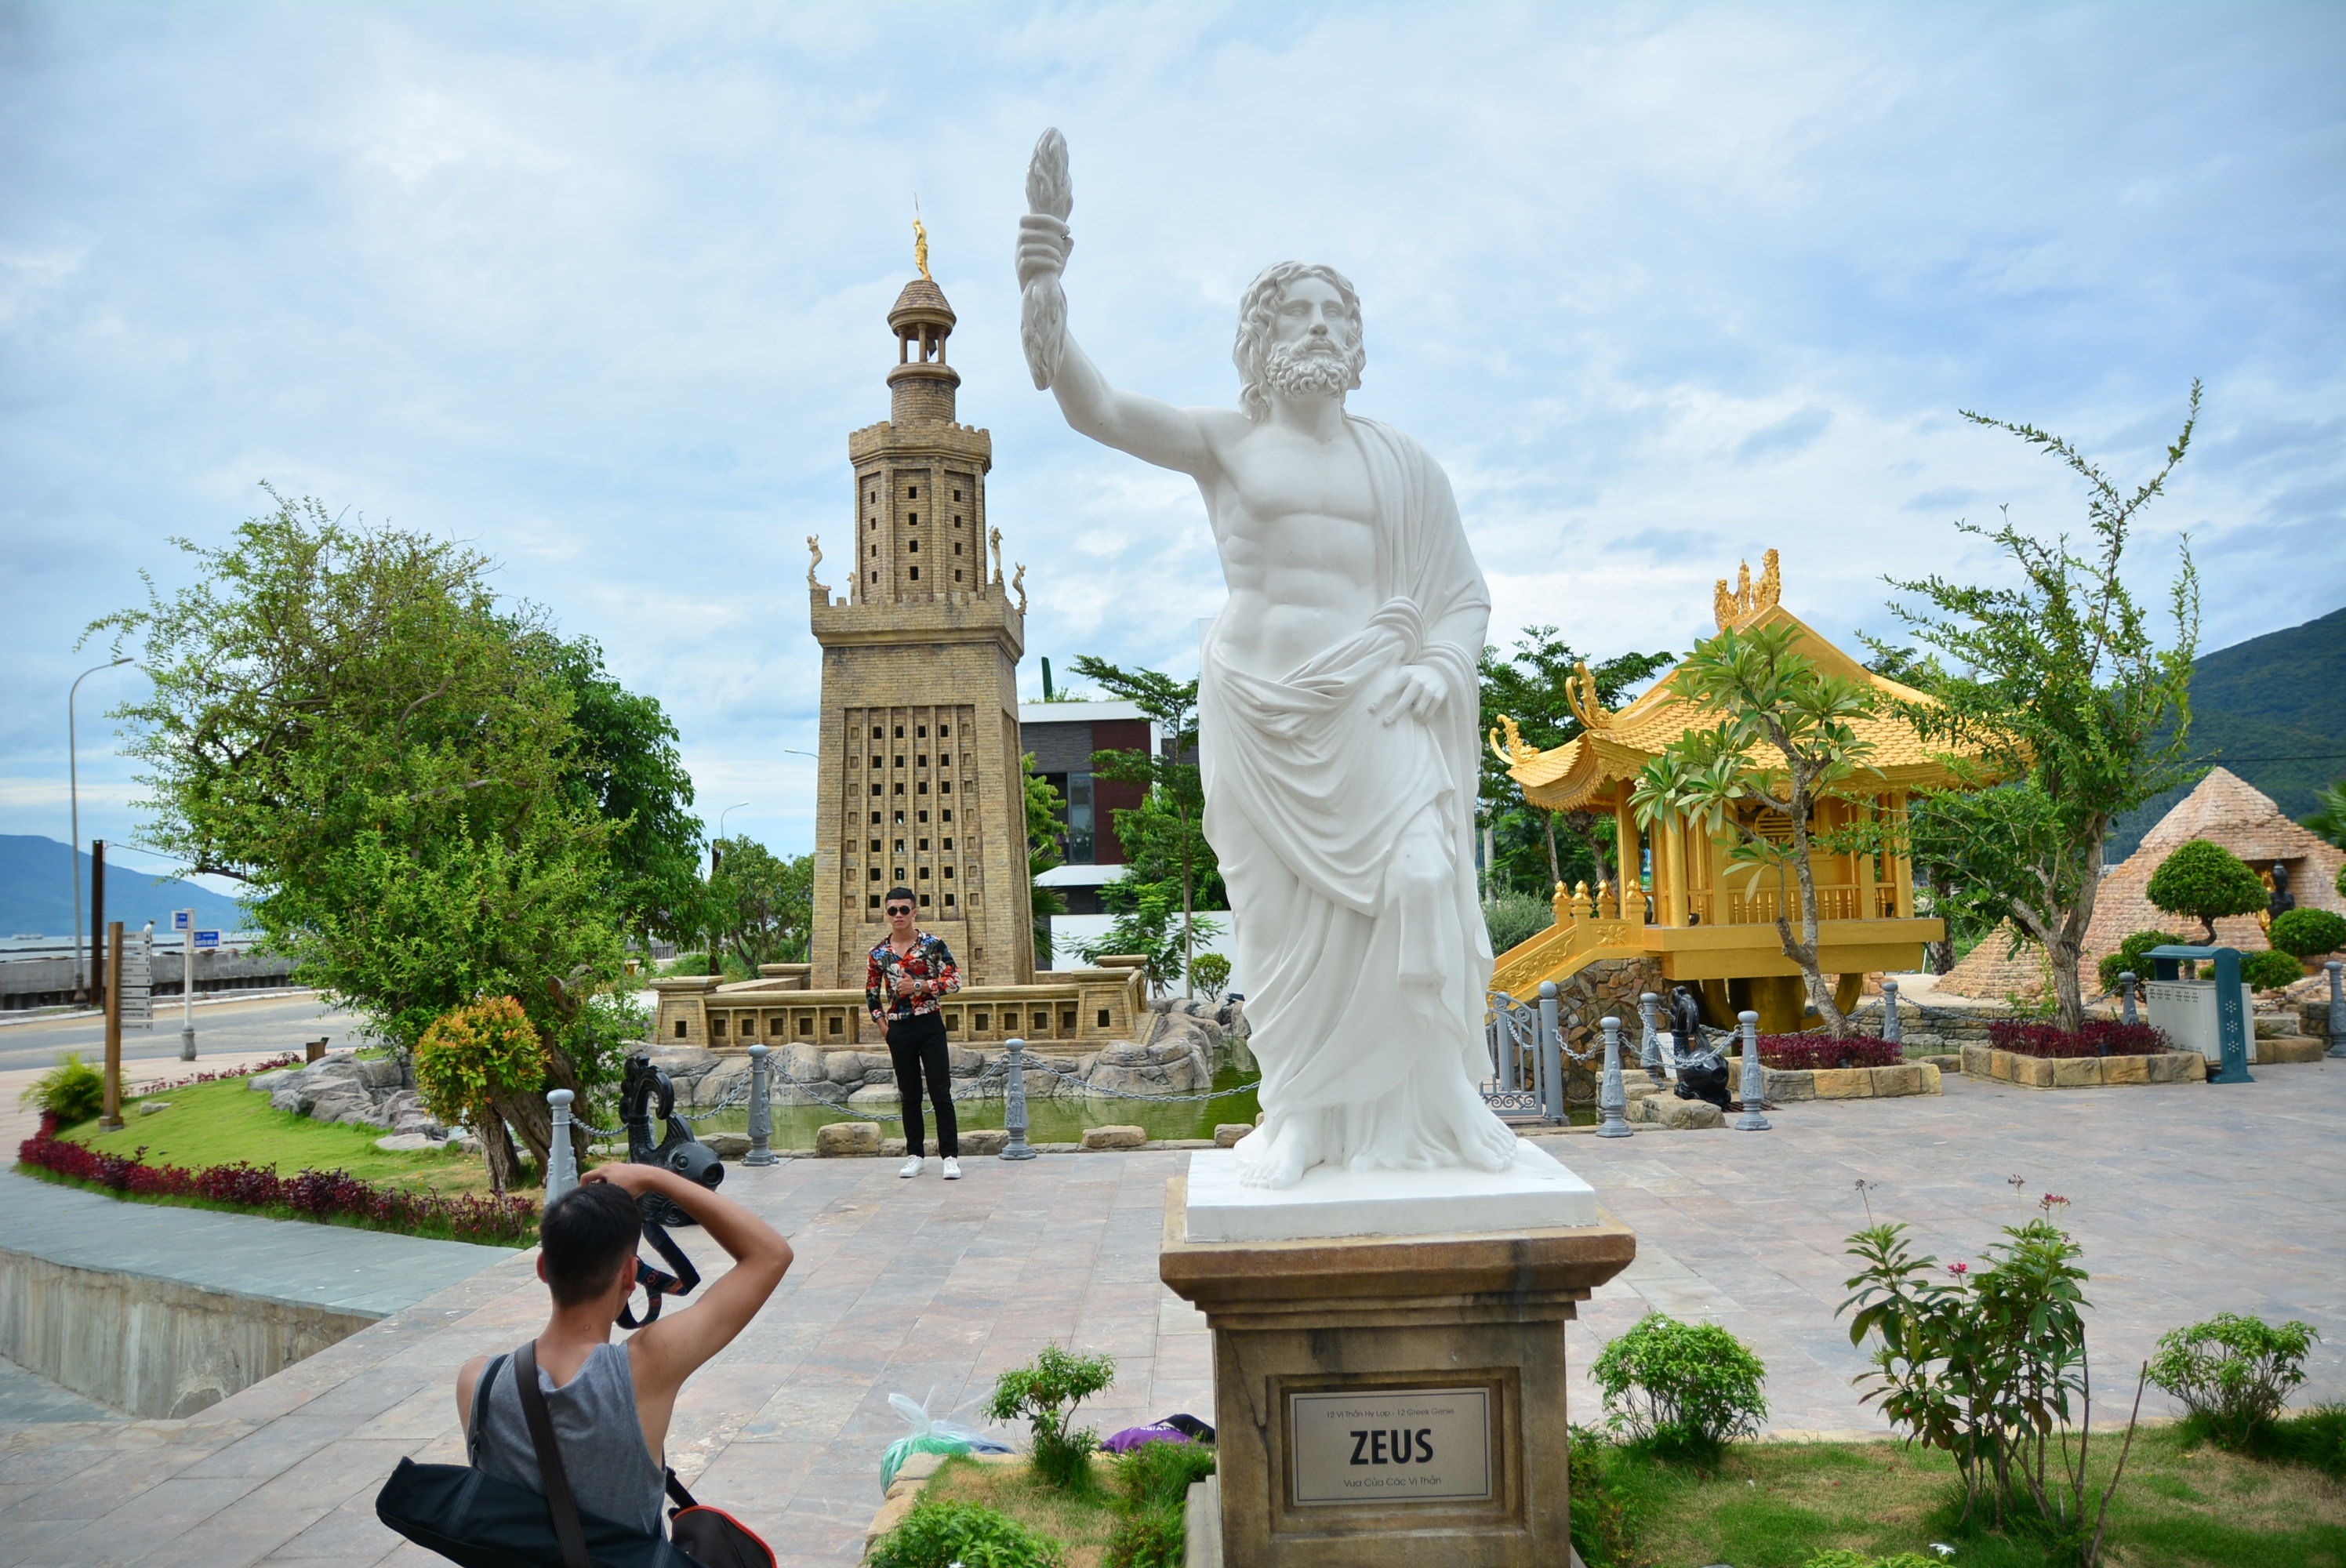 Danang World Wonders Park - Statue of Zeus